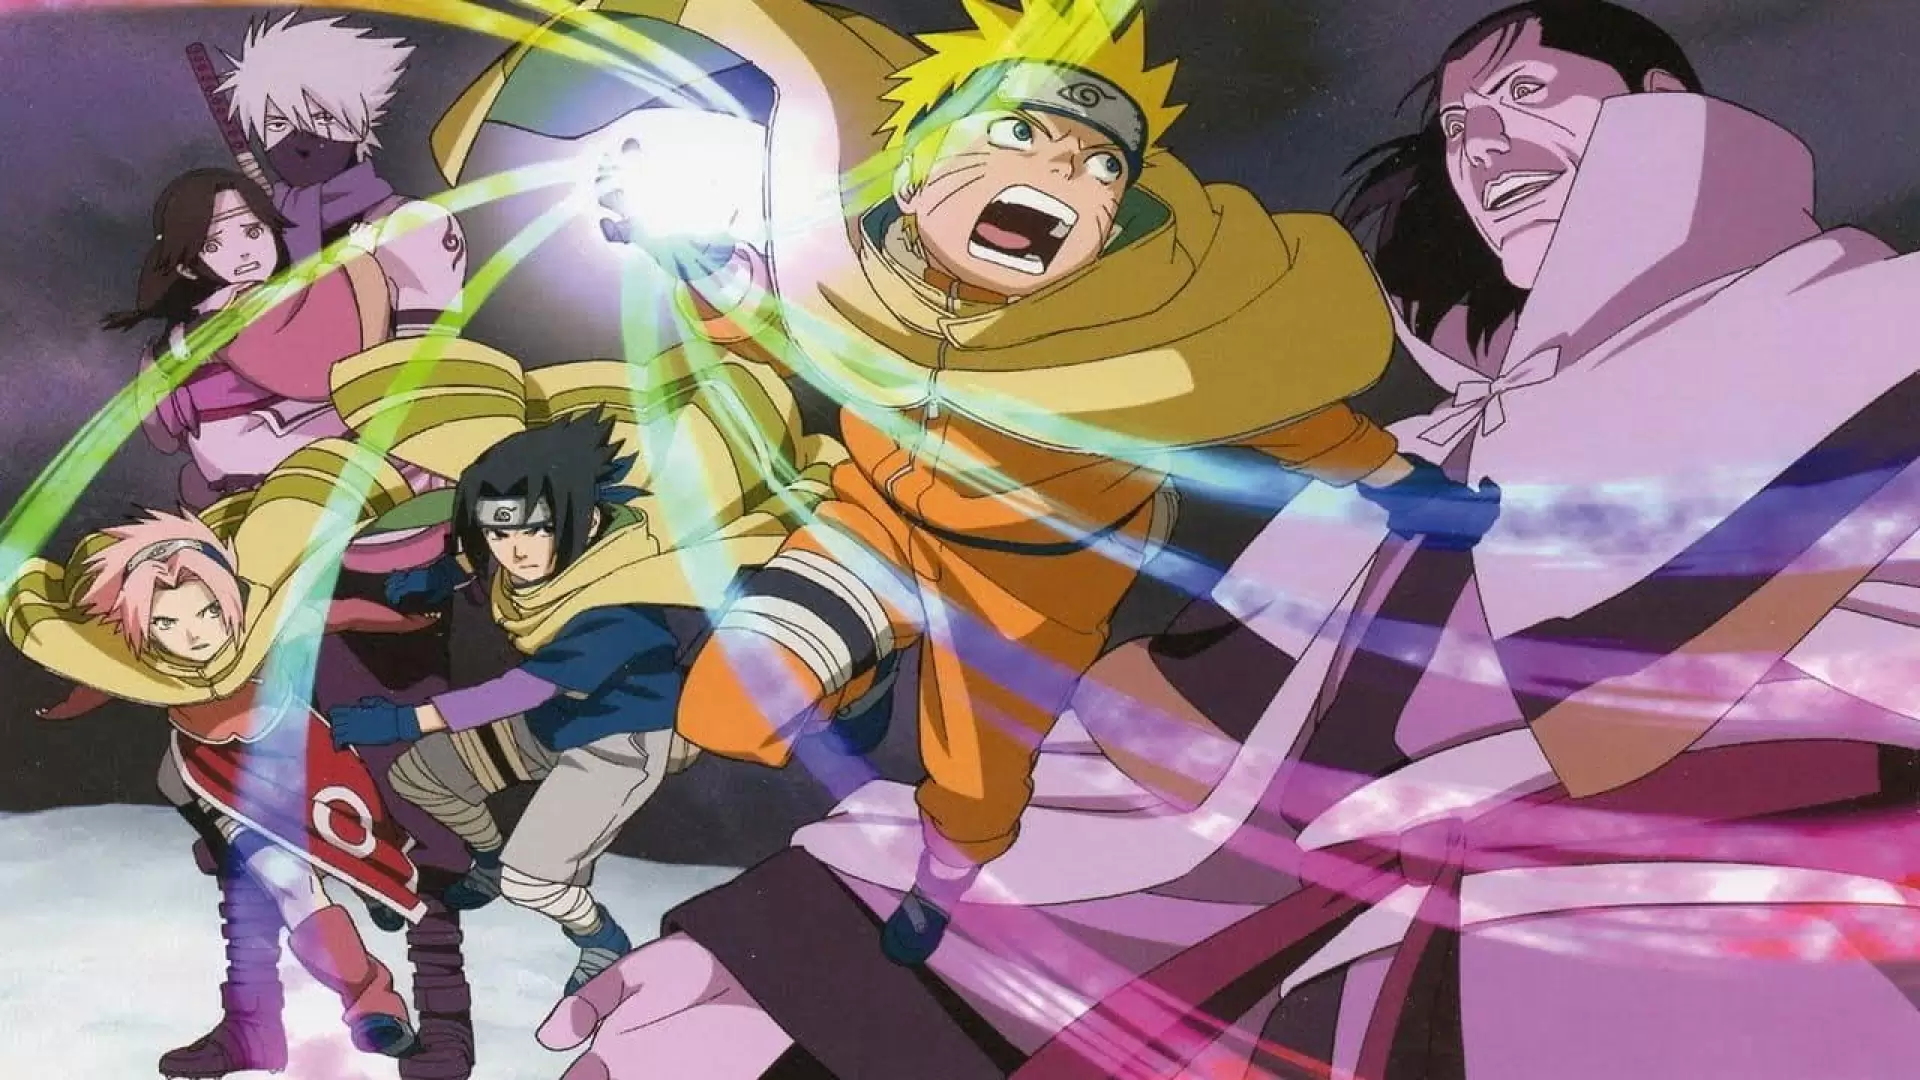 دانلود انیمه Naruto the Movie: Ninja Clash in the Land of Snow 2004 با زیرنویس فارسی